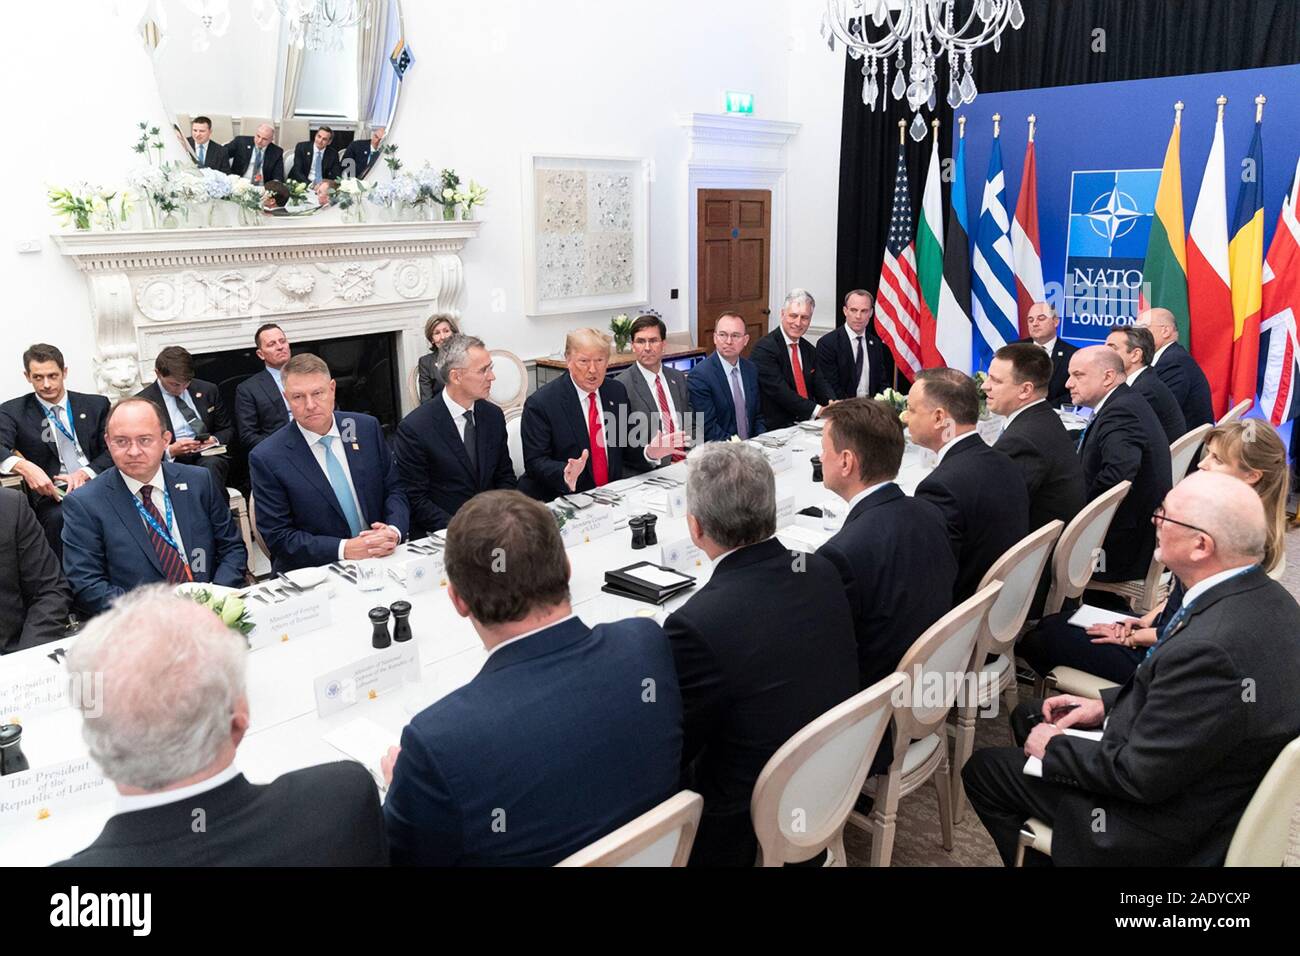 Stati Uniti Presidente Donald Trump, centro detiene un pranzo di lavoro con i membri della NATO che hanno incontrato i loro 2 percento degli impegni finanziari al Grove a margine del vertice Nato il 4 dicembre 2019 a Watford, Hertfordshire, Regno Unito. Foto Stock